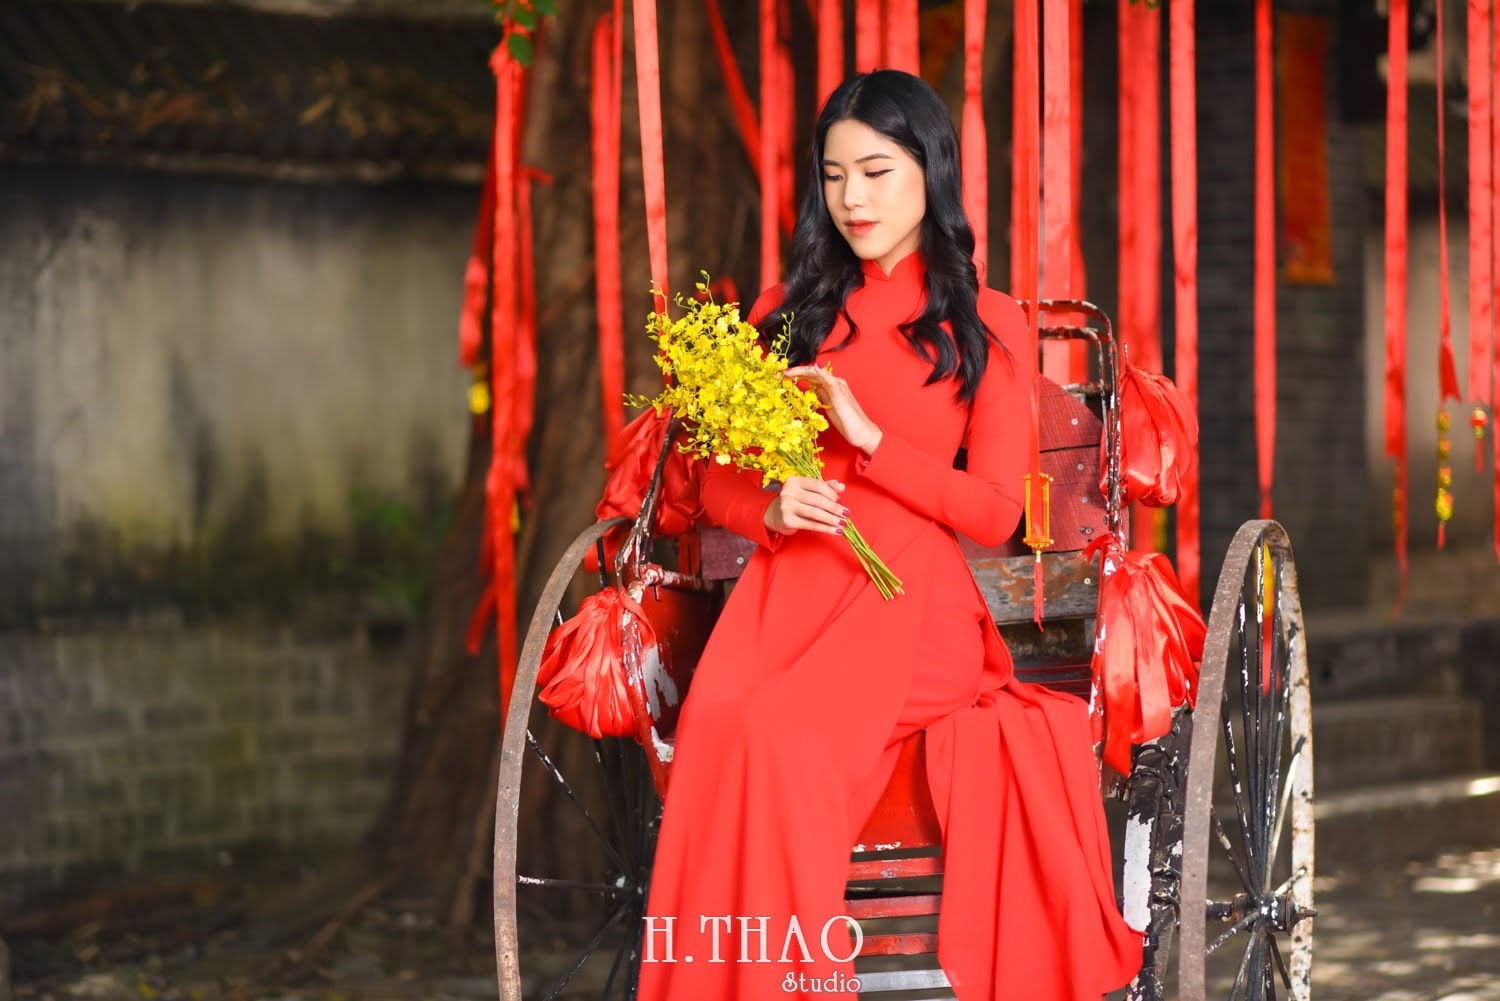 Ao dai alibaba 6 min - #15 Cách tạo dáng chụp áo dài Tết duyên dáng - HThao Studio